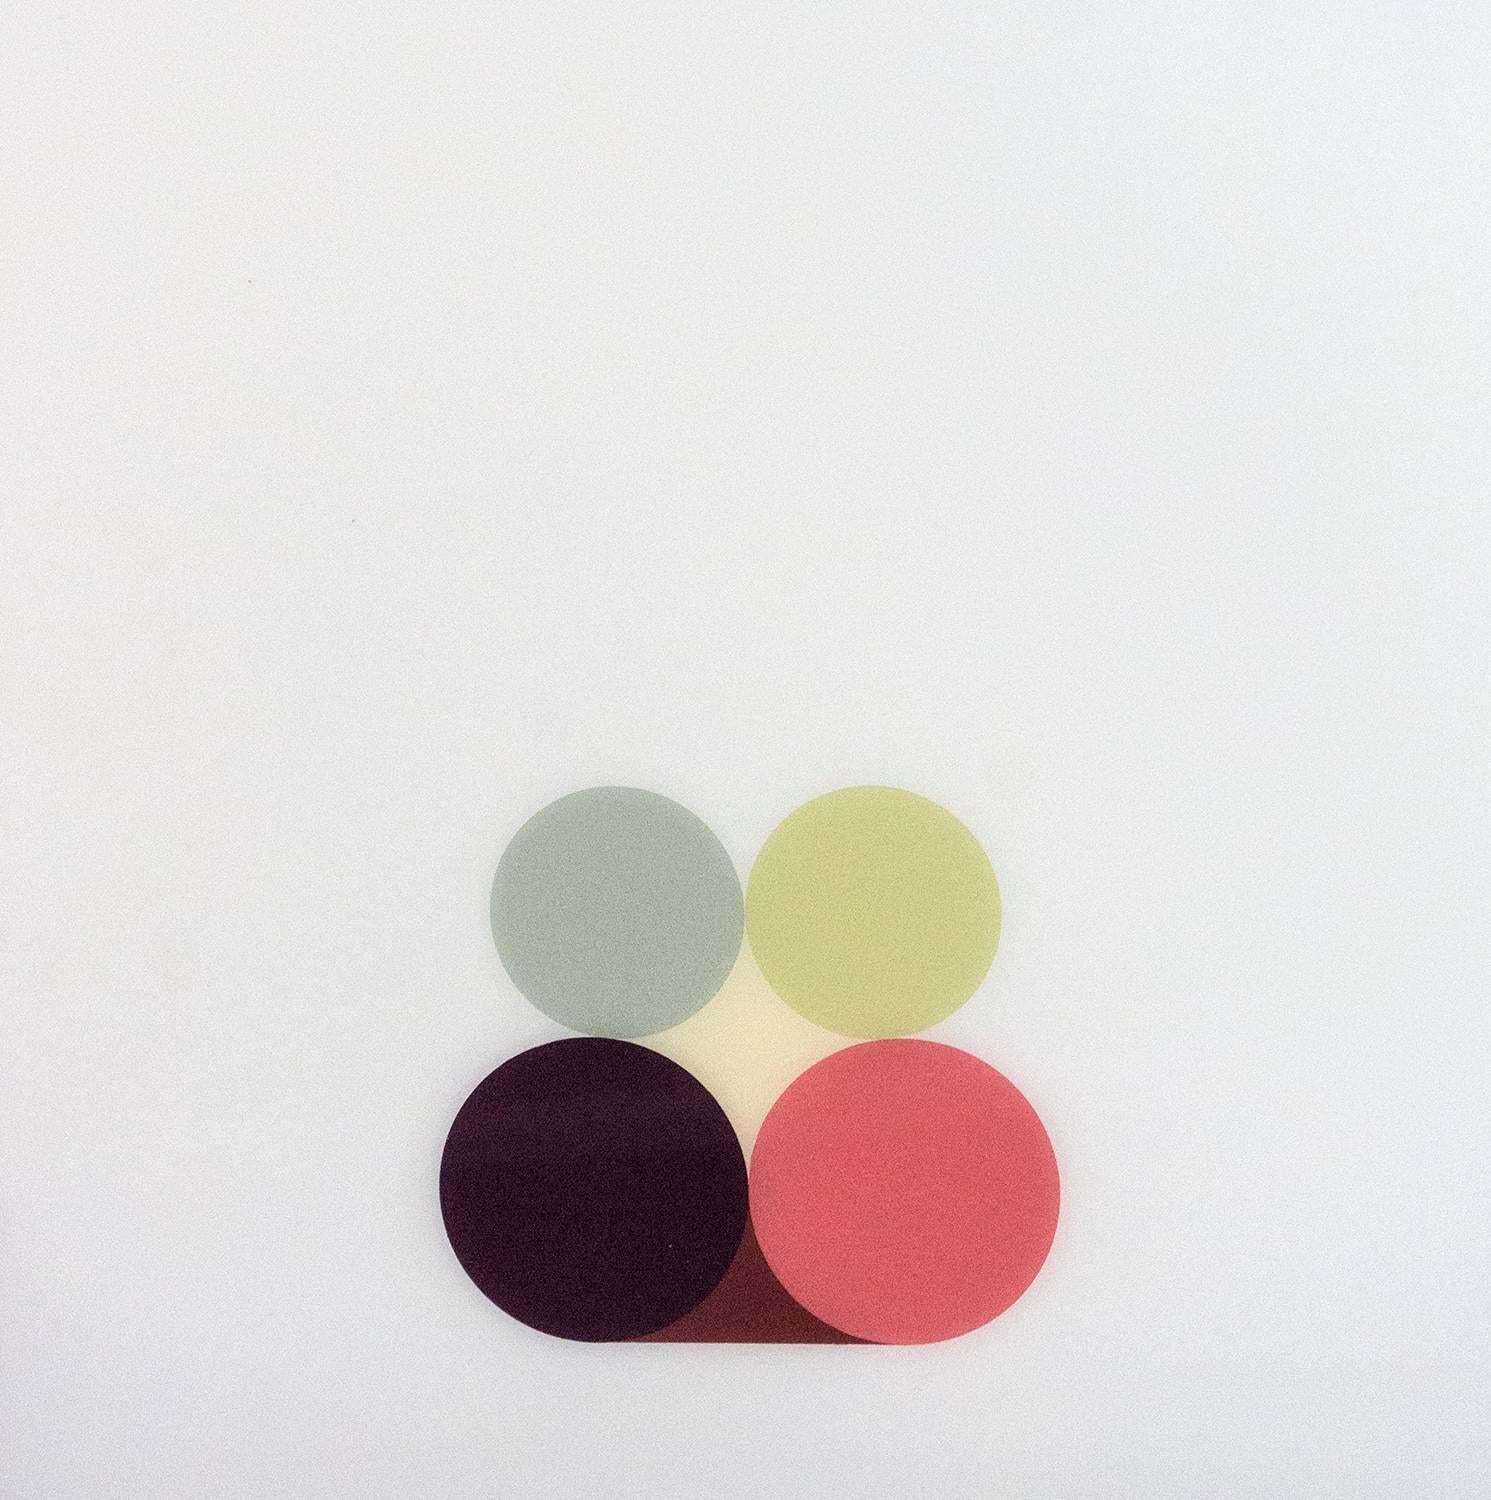 Stillleben Green No 1 – helles, geometrisches minimalistisches Design, Acryl auf Plexiglas